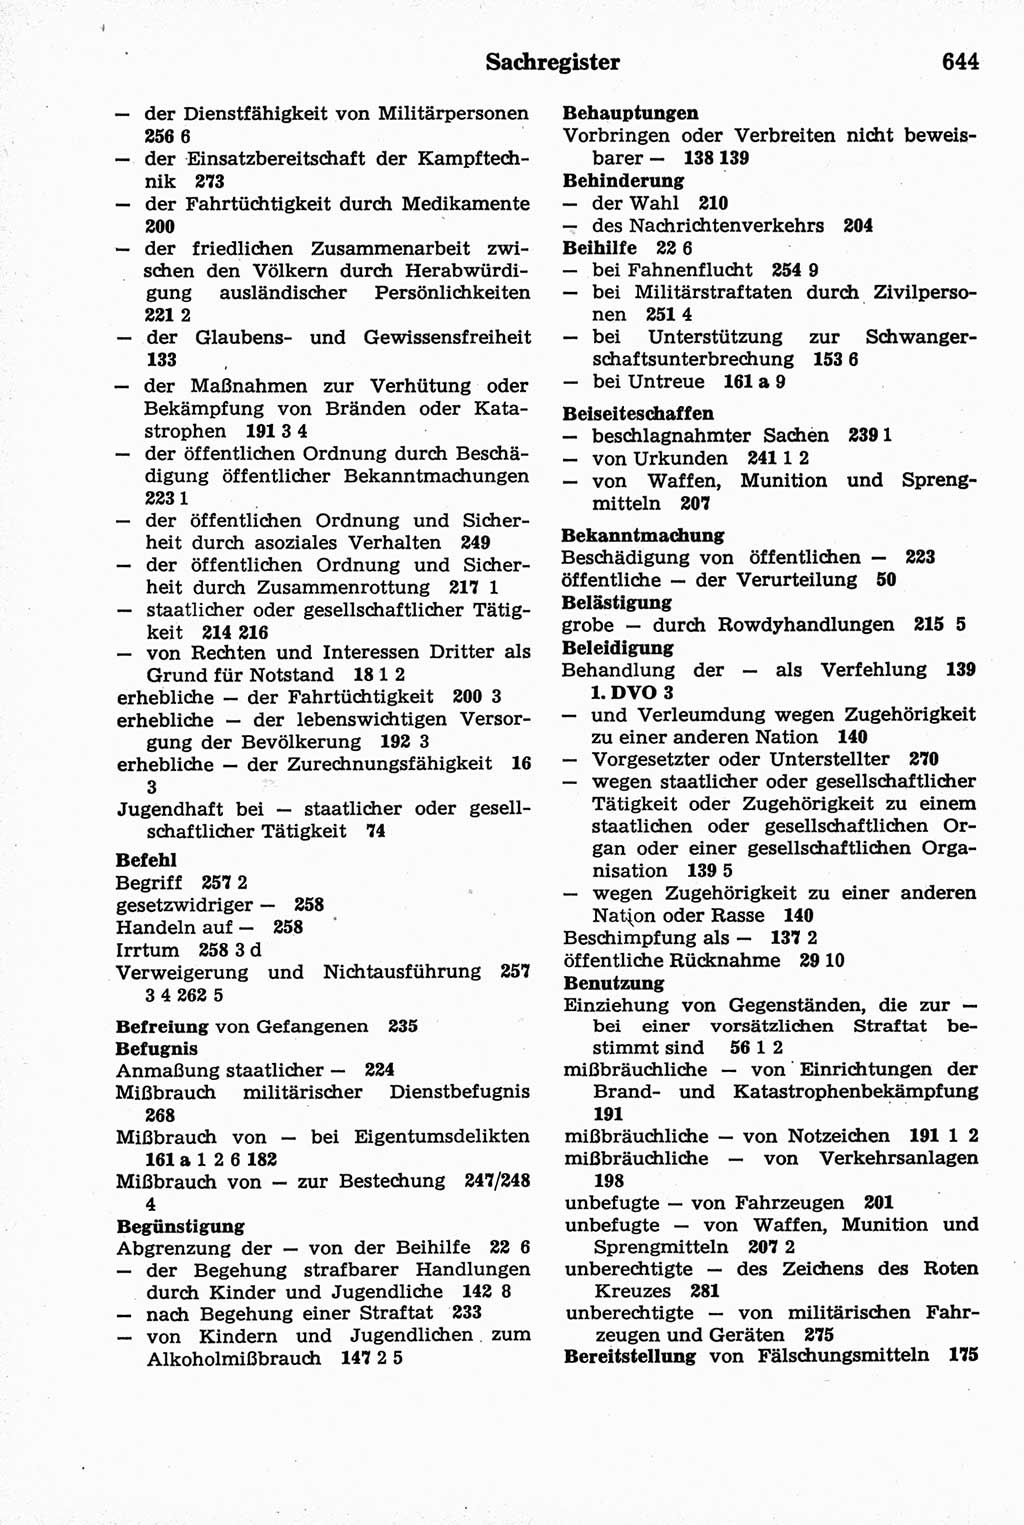 Strafrecht der Deutschen Demokratischen Republik (DDR), Kommentar zum Strafgesetzbuch (StGB) 1981, Seite 644 (Strafr. DDR Komm. StGB 1981, S. 644)